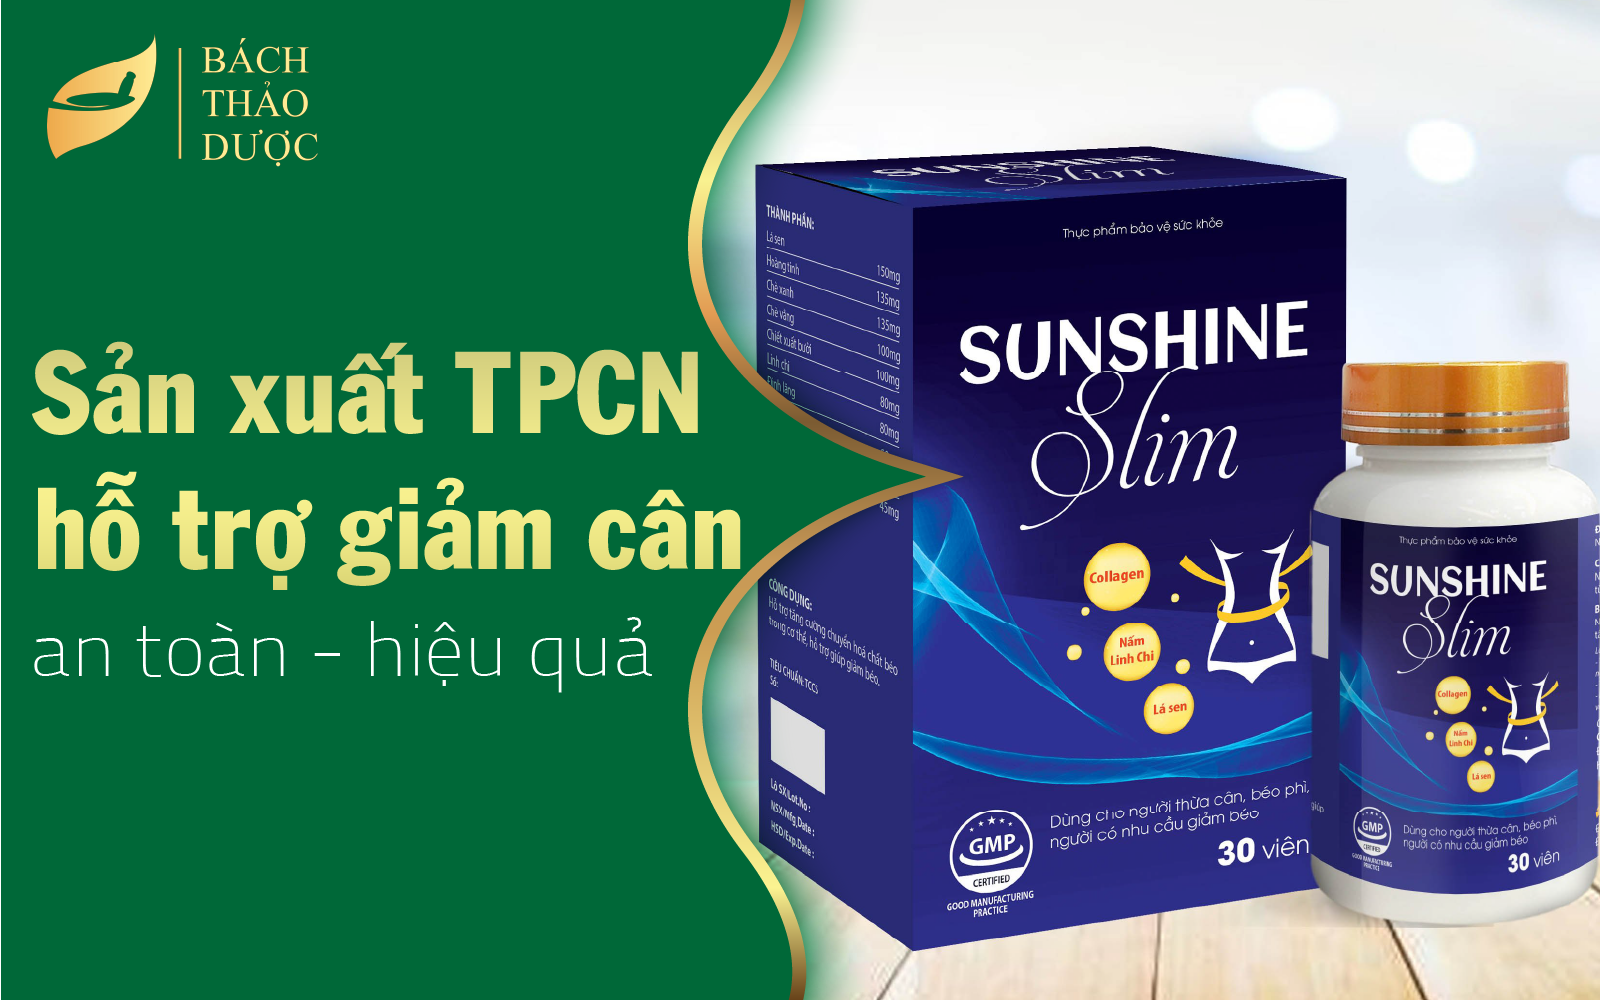 Sản xuất TPCN hỗ trợ giảm cân chất lượng